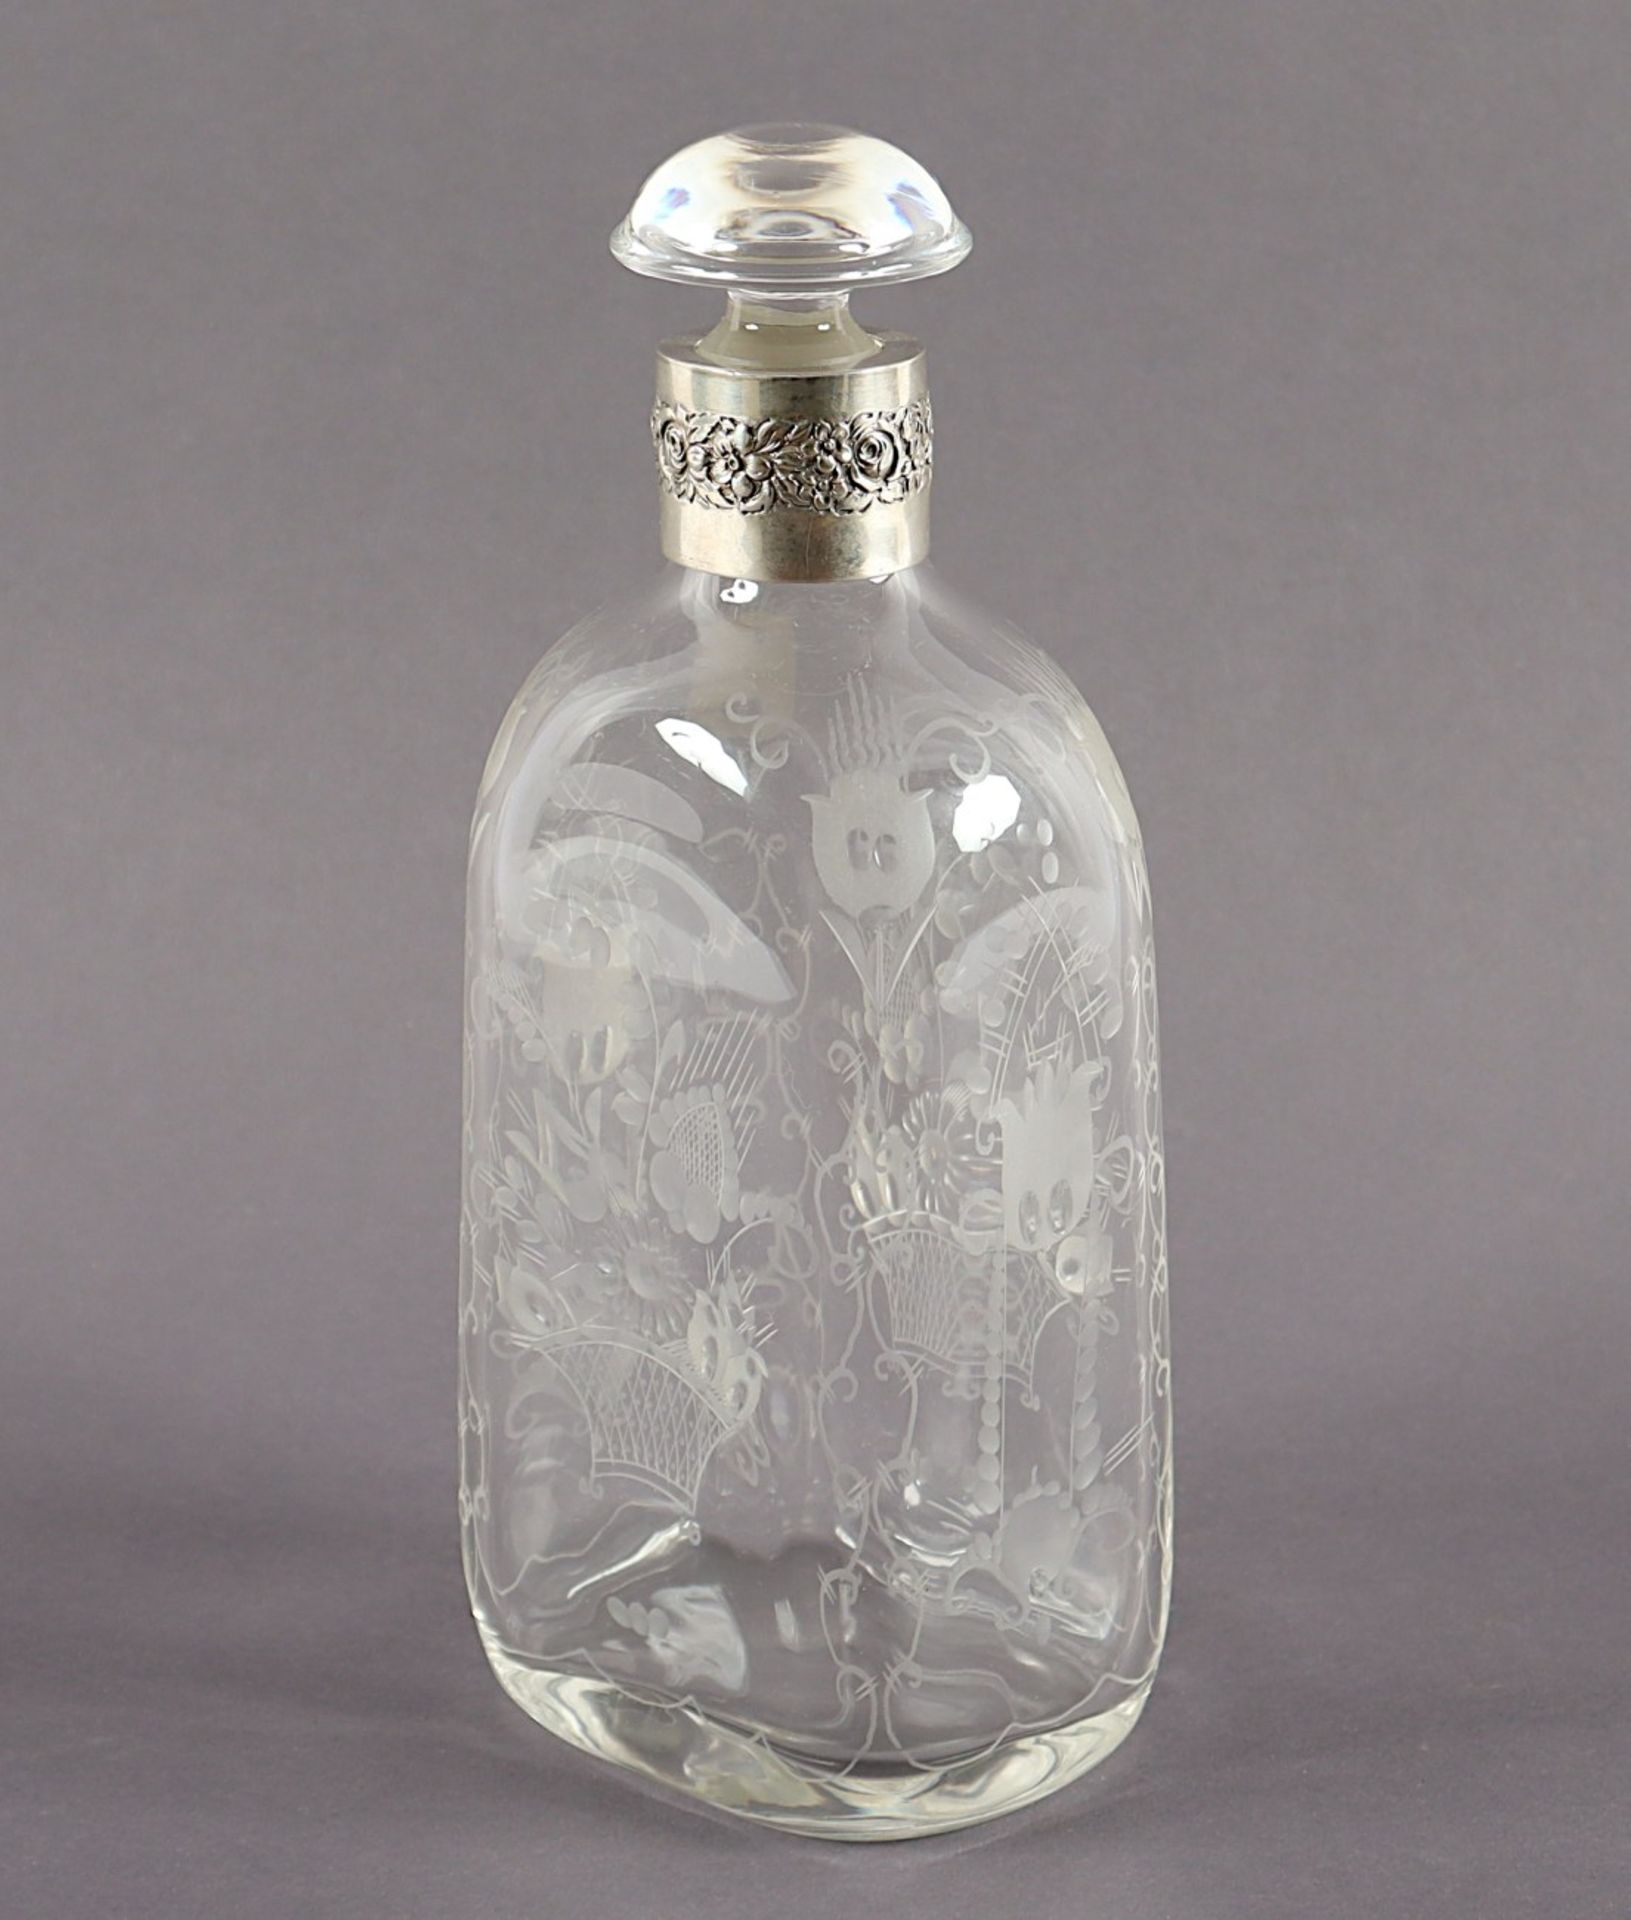 KARAFFE, farbloses Glas, Gravurdekor, Manschette aus Silber 800/ooo, H 21, DEUTSCH, um 1920 